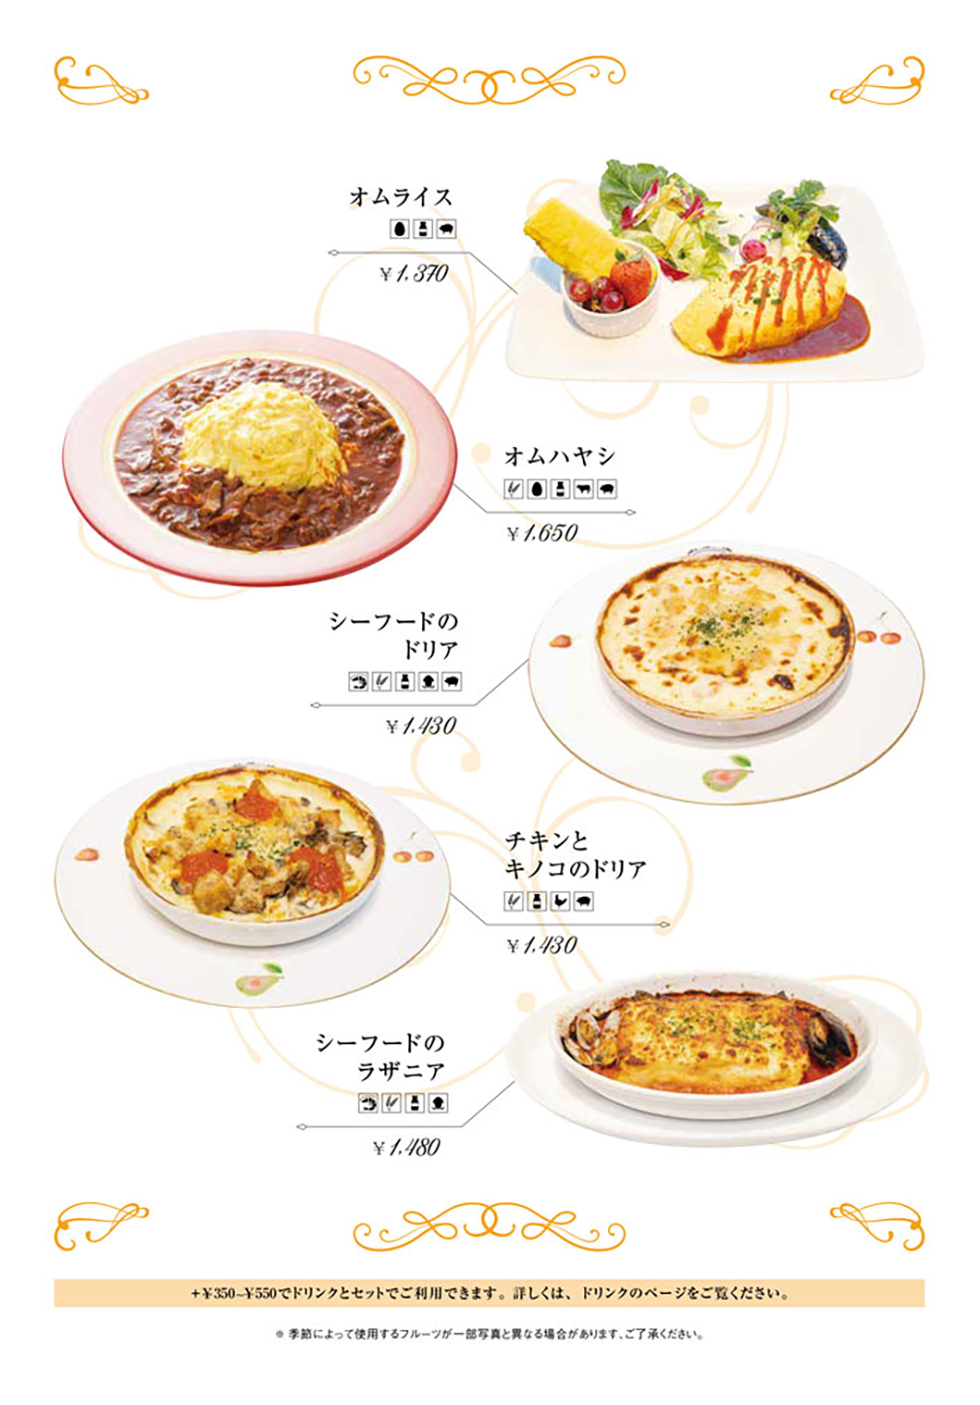 リーベルecute立川店の食事メニュー定番軽食2